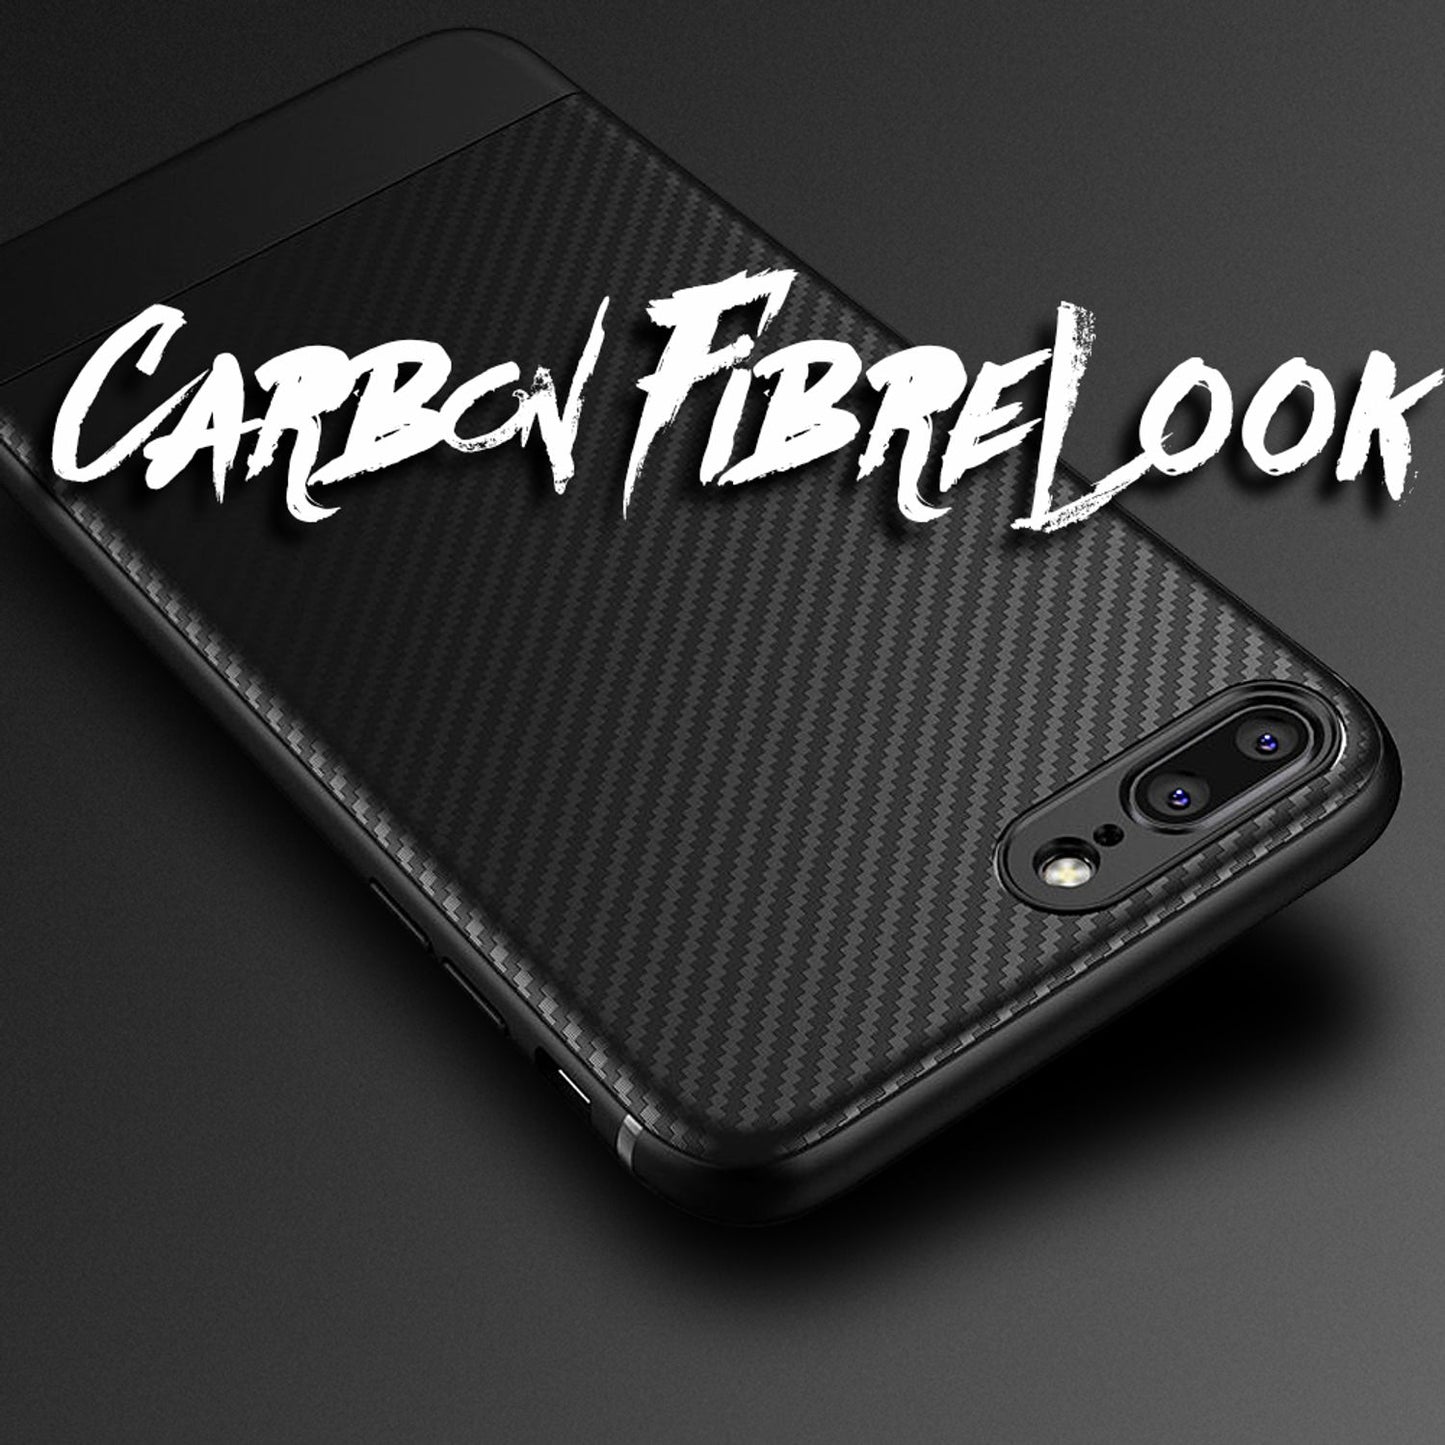 NALIA Hülle für iPhone 8 Plus / 7 Plus, Slim Handyhülle Case Cover Carbon Look